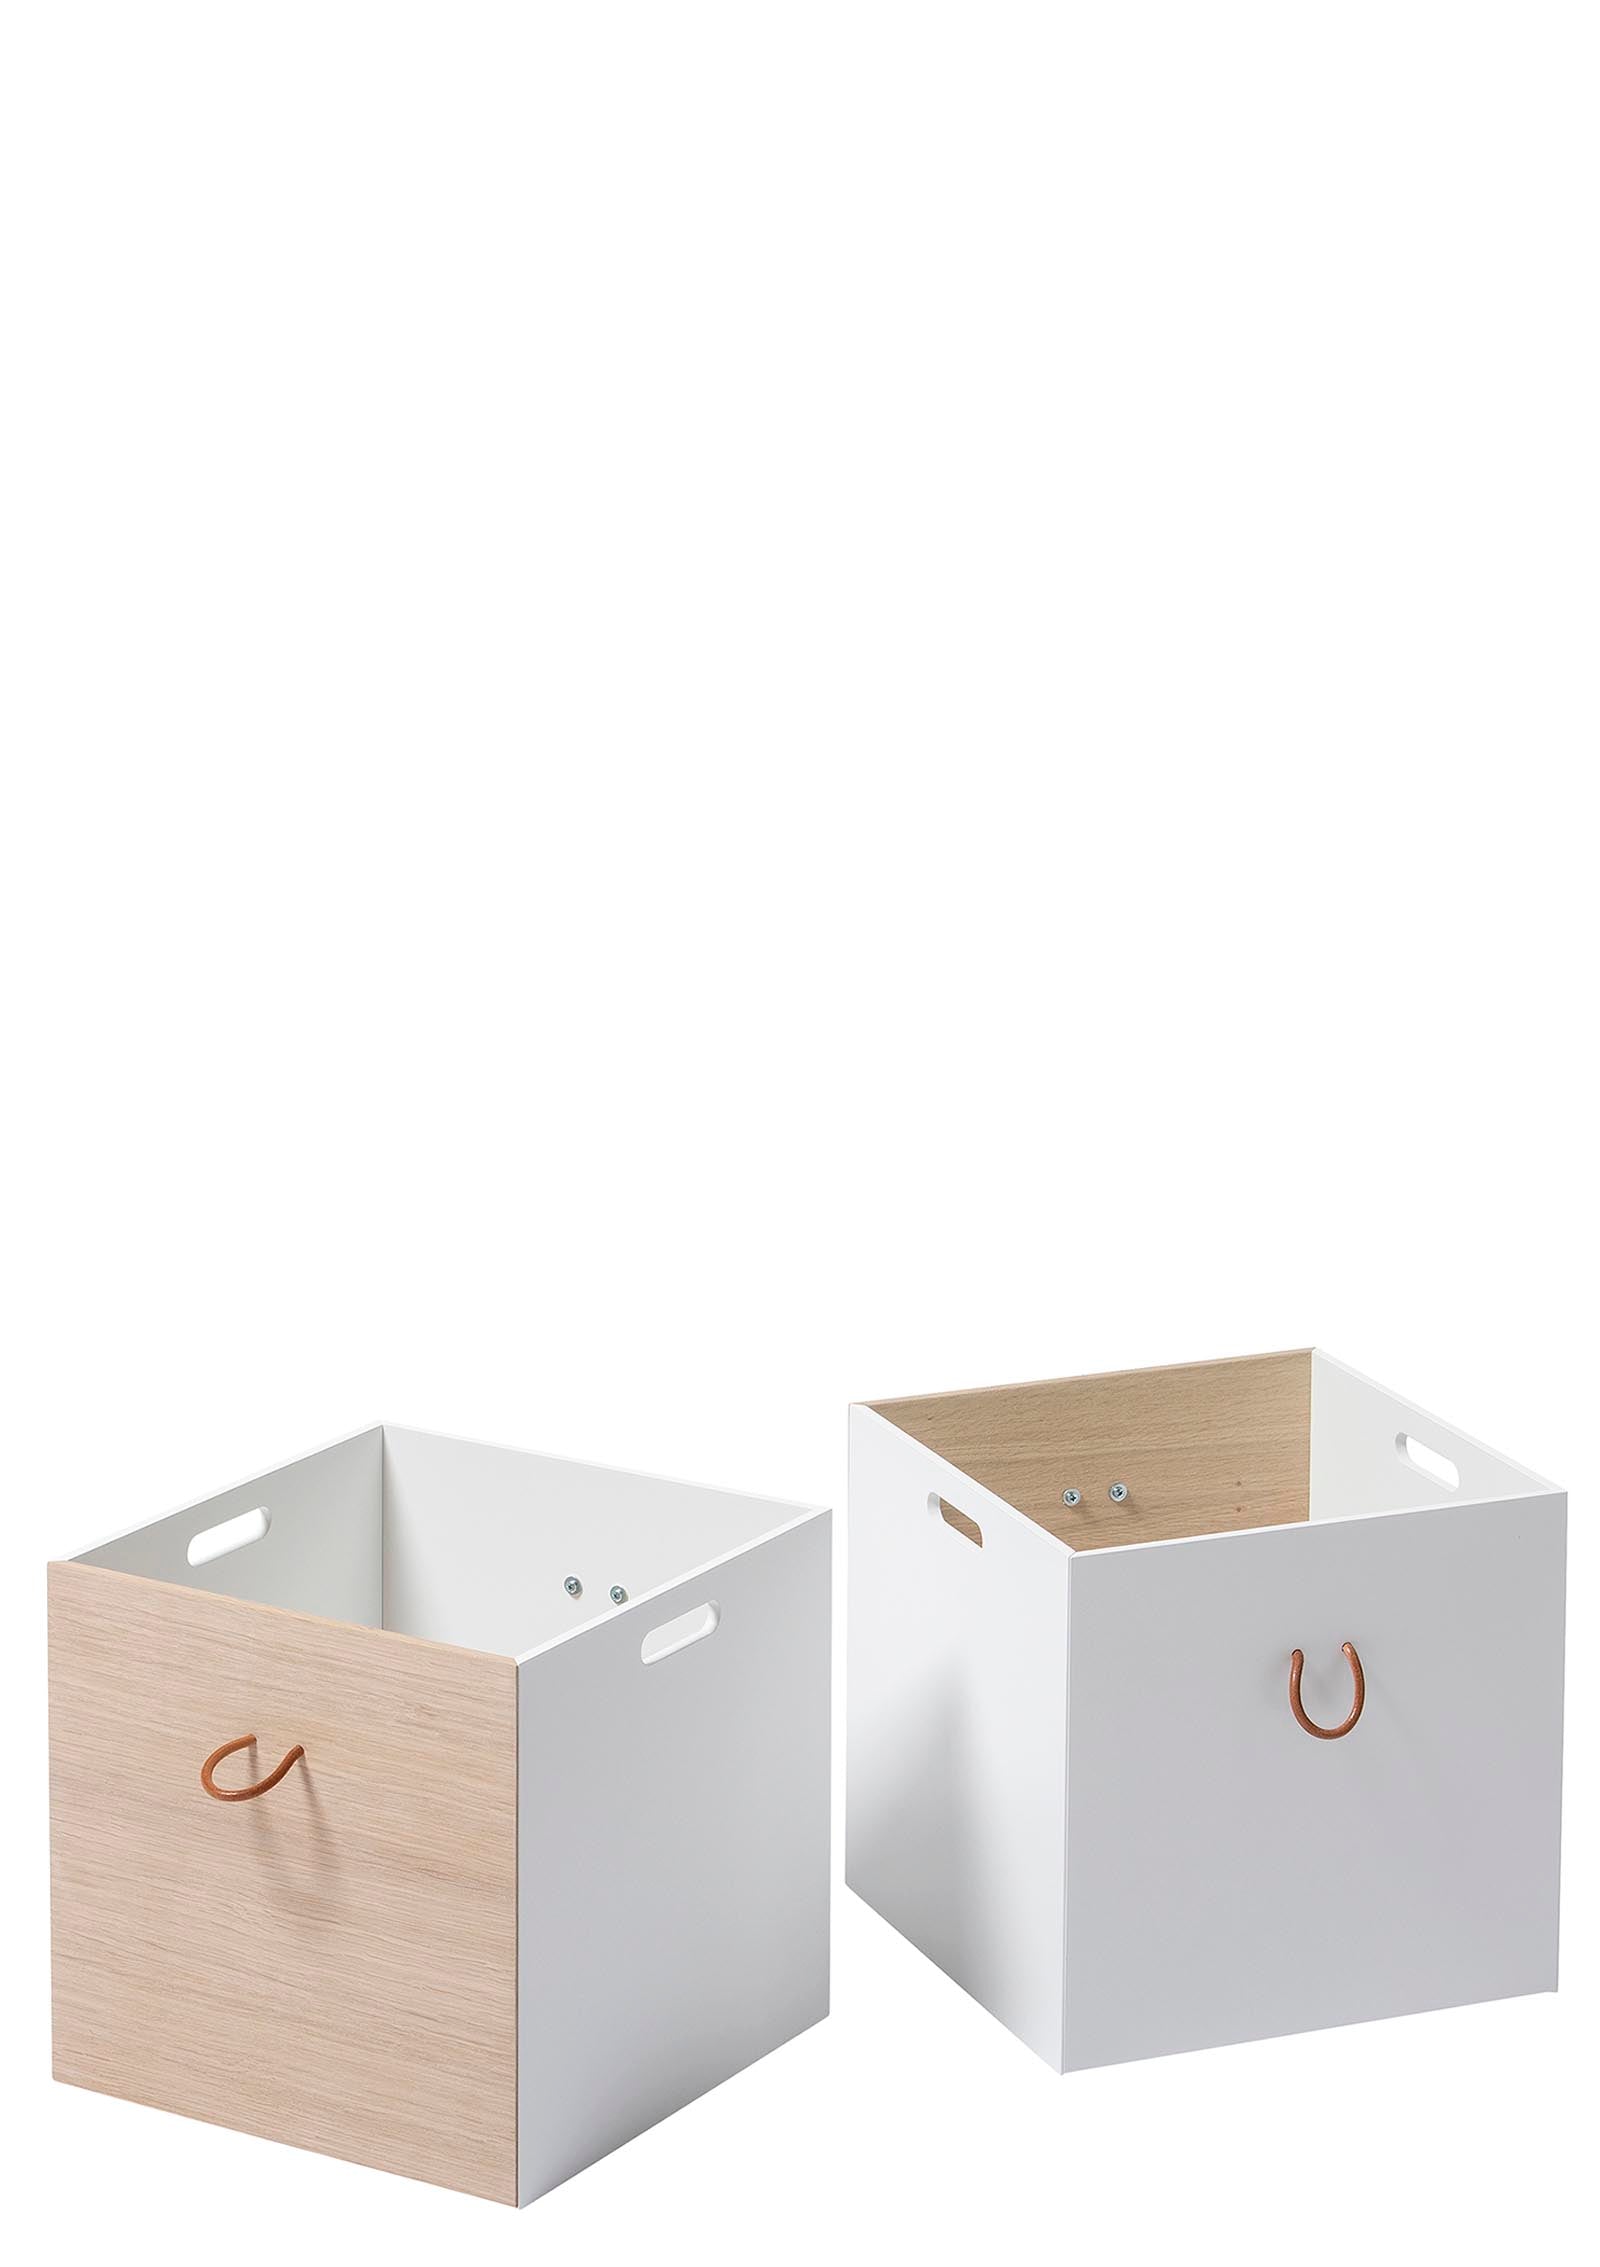 Oliver Furniture 'Wood' Kisten Weiß/Eiche